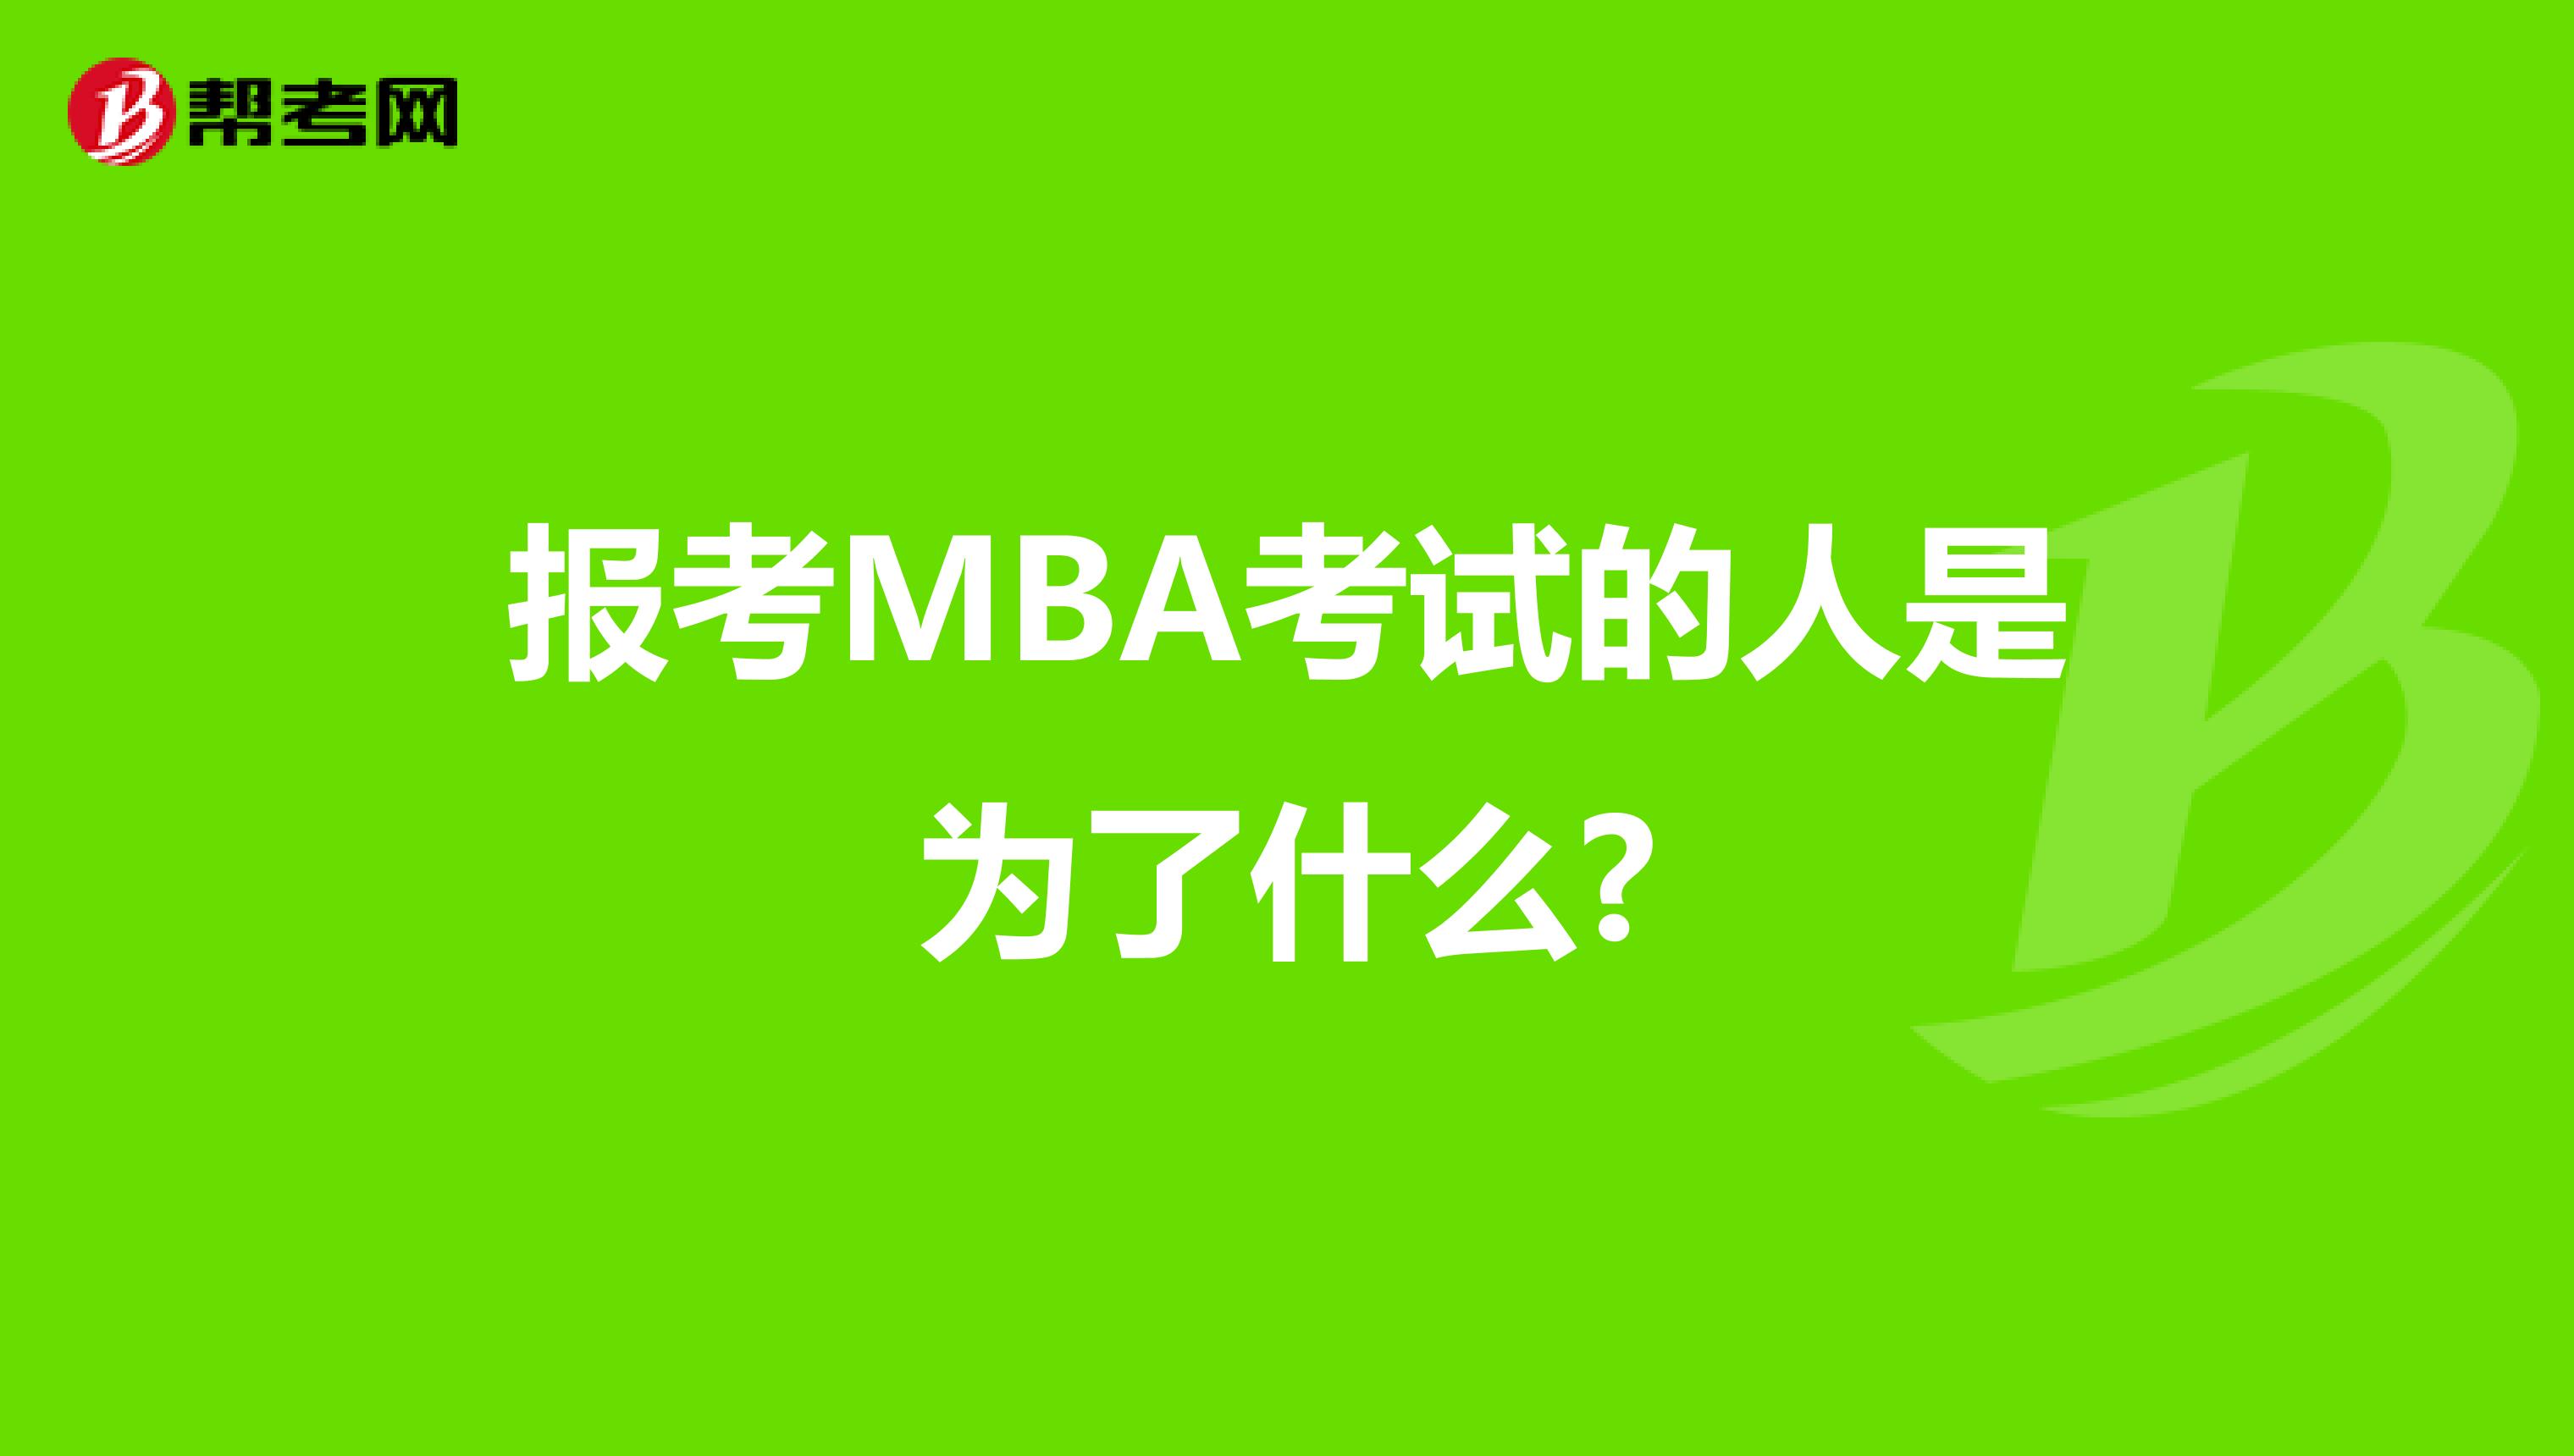 报考MBA考试的人是为了什么?